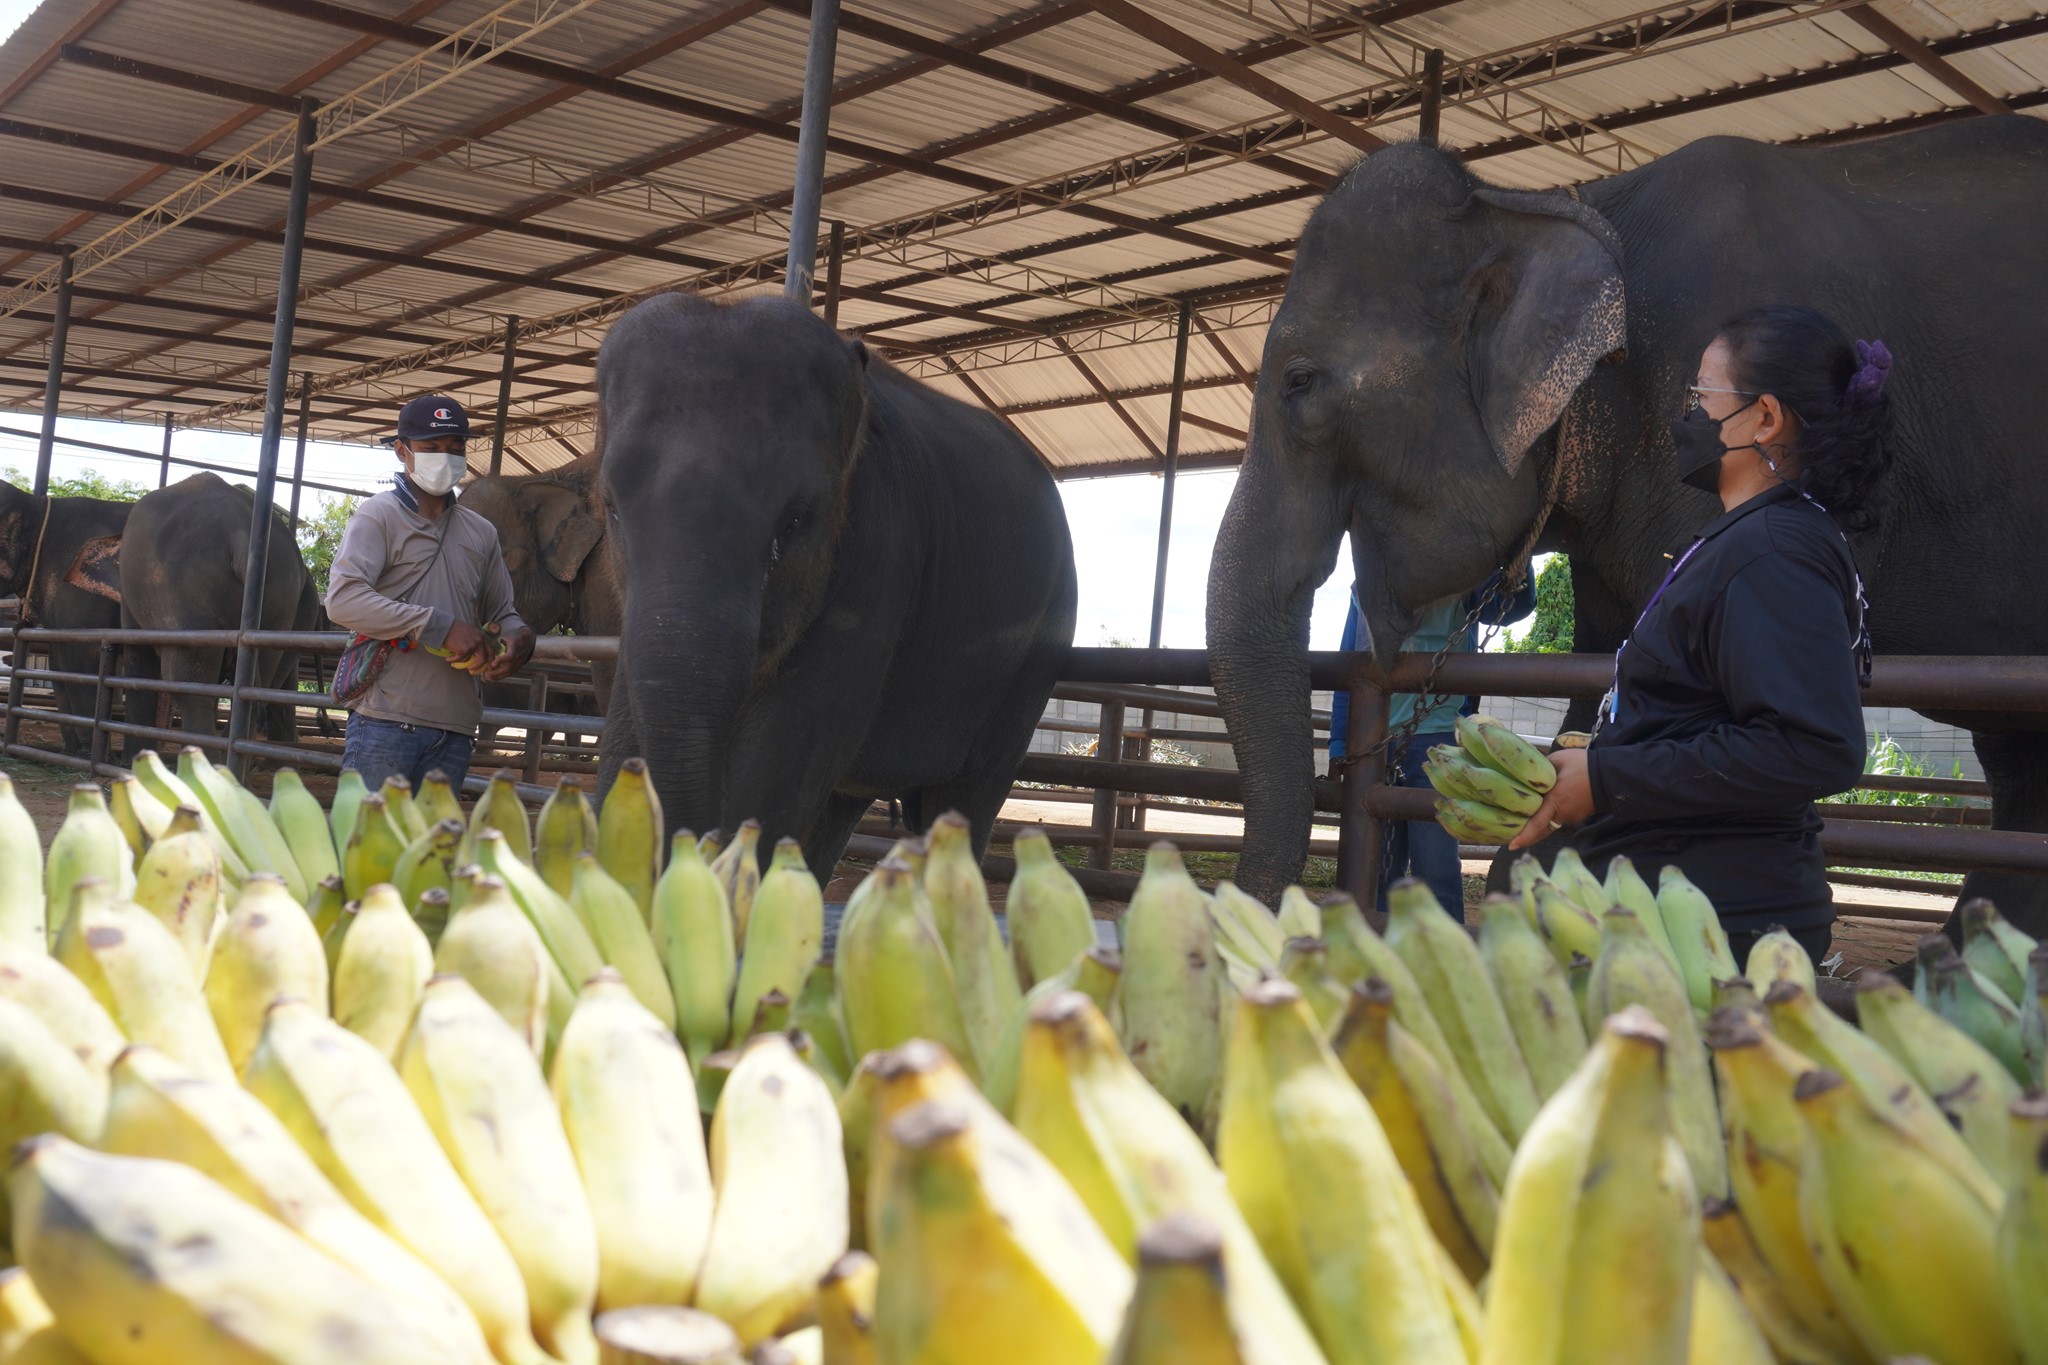 ลูกค้าทำบุญ เนื่องใน “วันแม่แห่งชาติ” บริจาคเงินซื้อกล้วยให้แม่ช้าง ที่ ปางช้างสวนนงนุชพัทยา